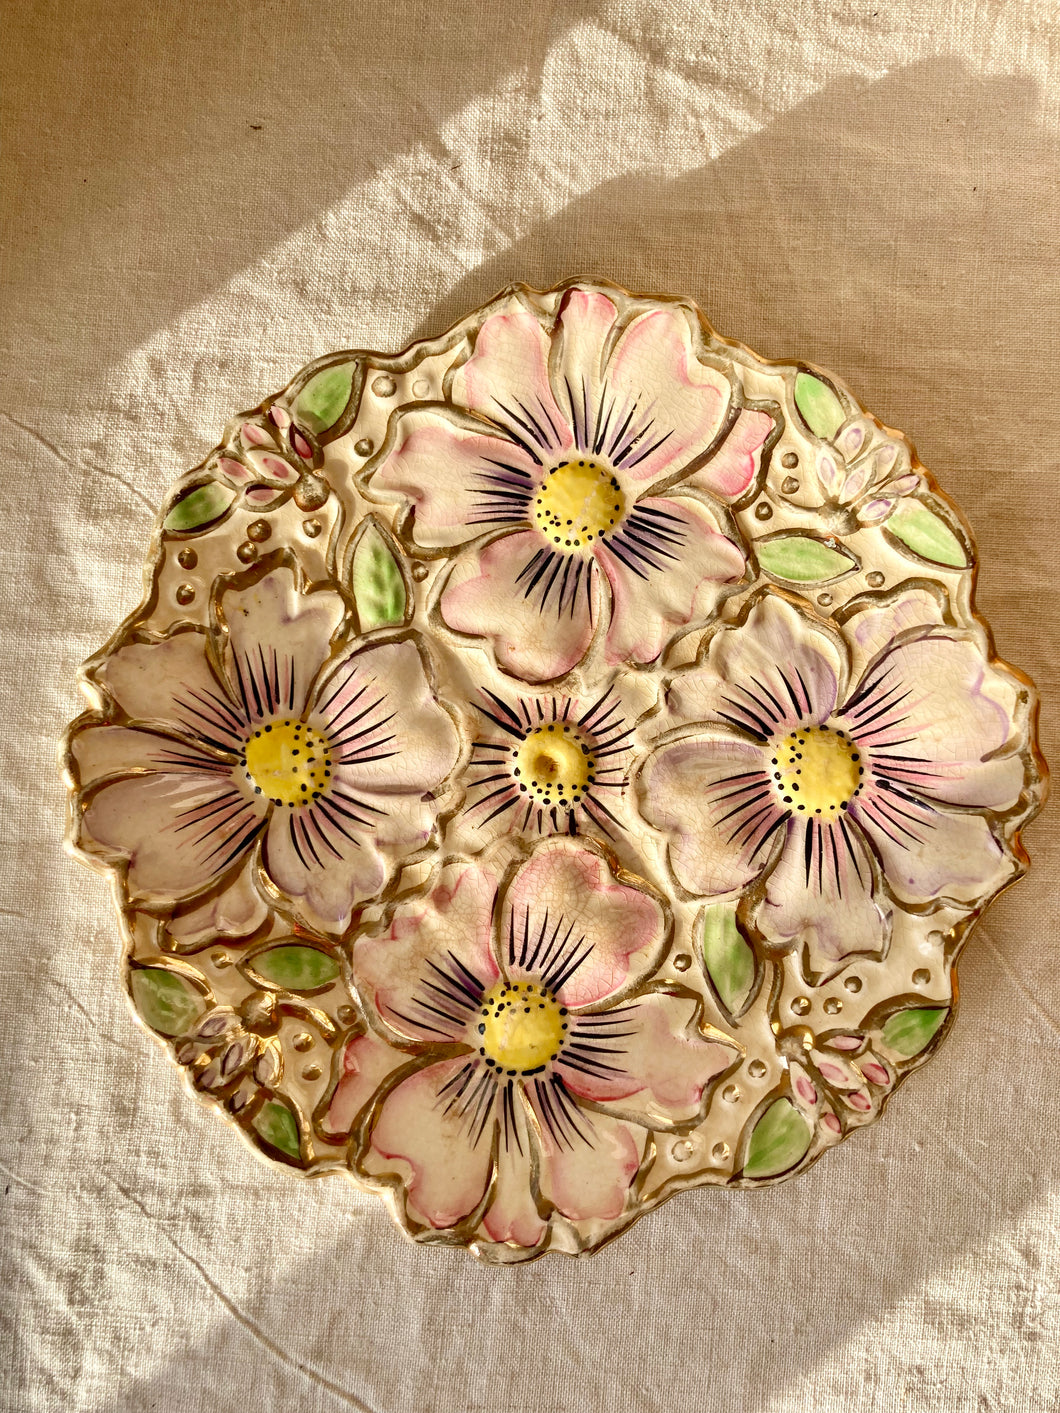 A Price Kensington pastel floral serving plate